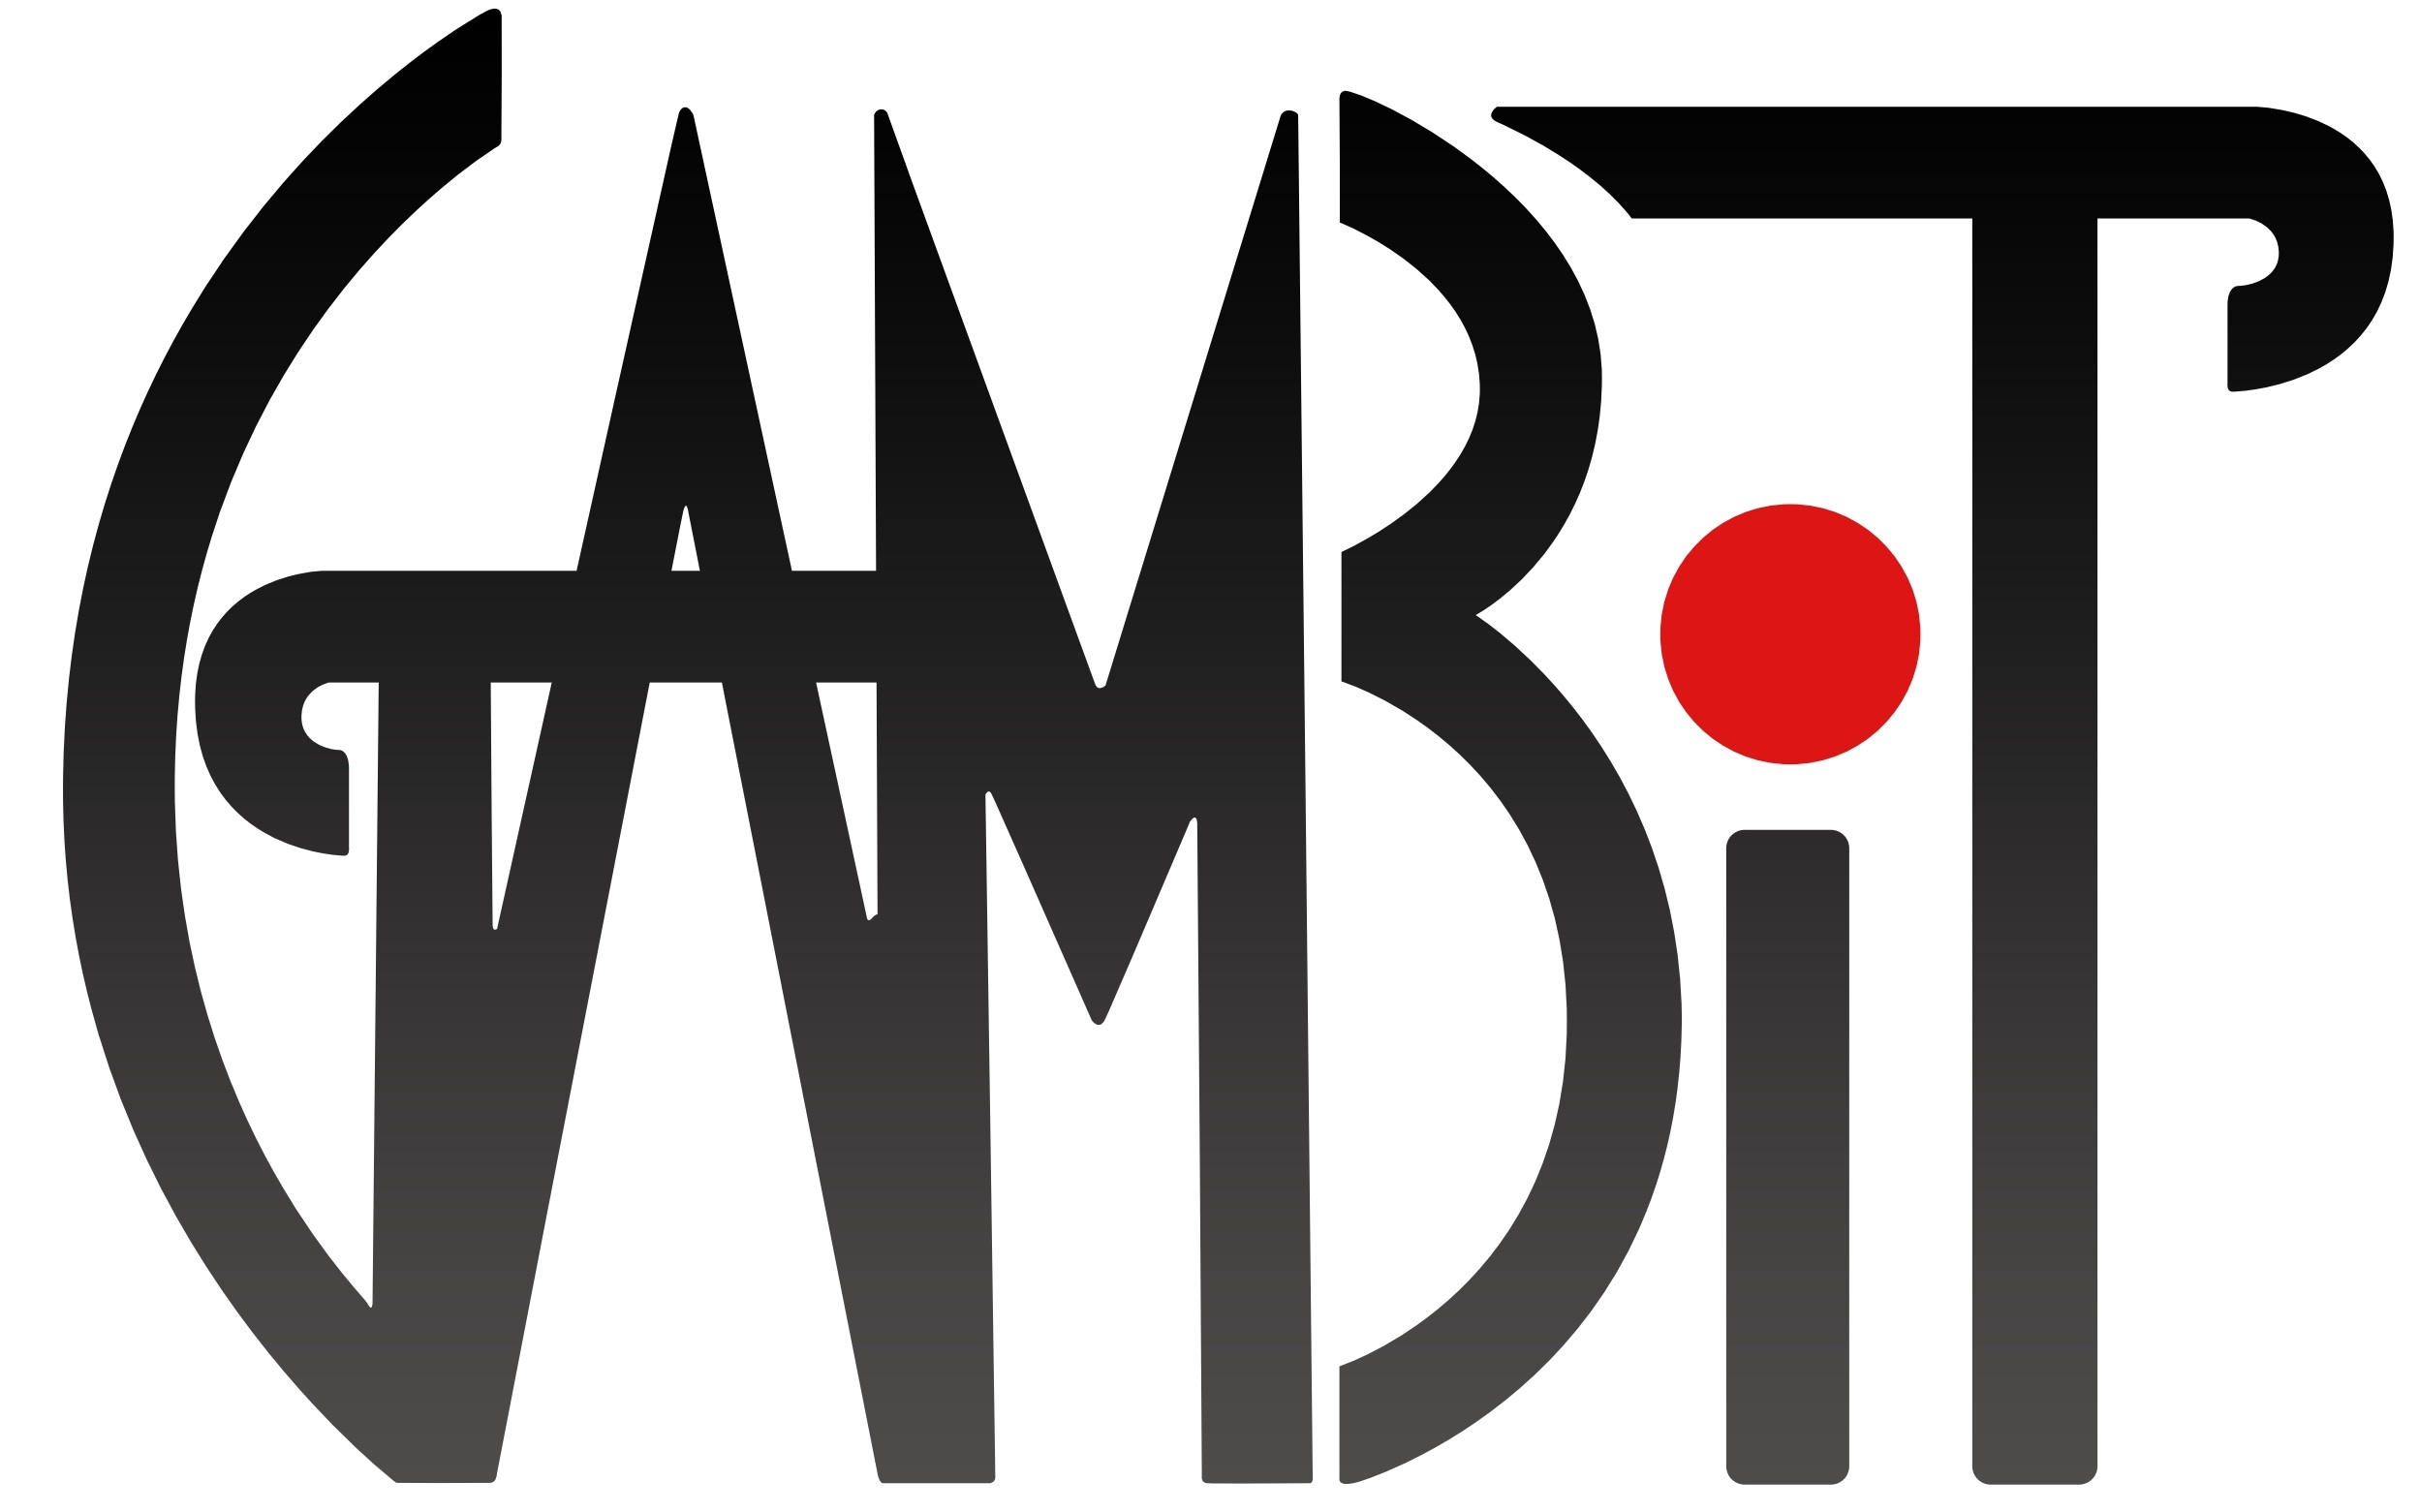 GAMBIT Logo.jpg bb3e8f84a2ff404405f7ef70a86c376a